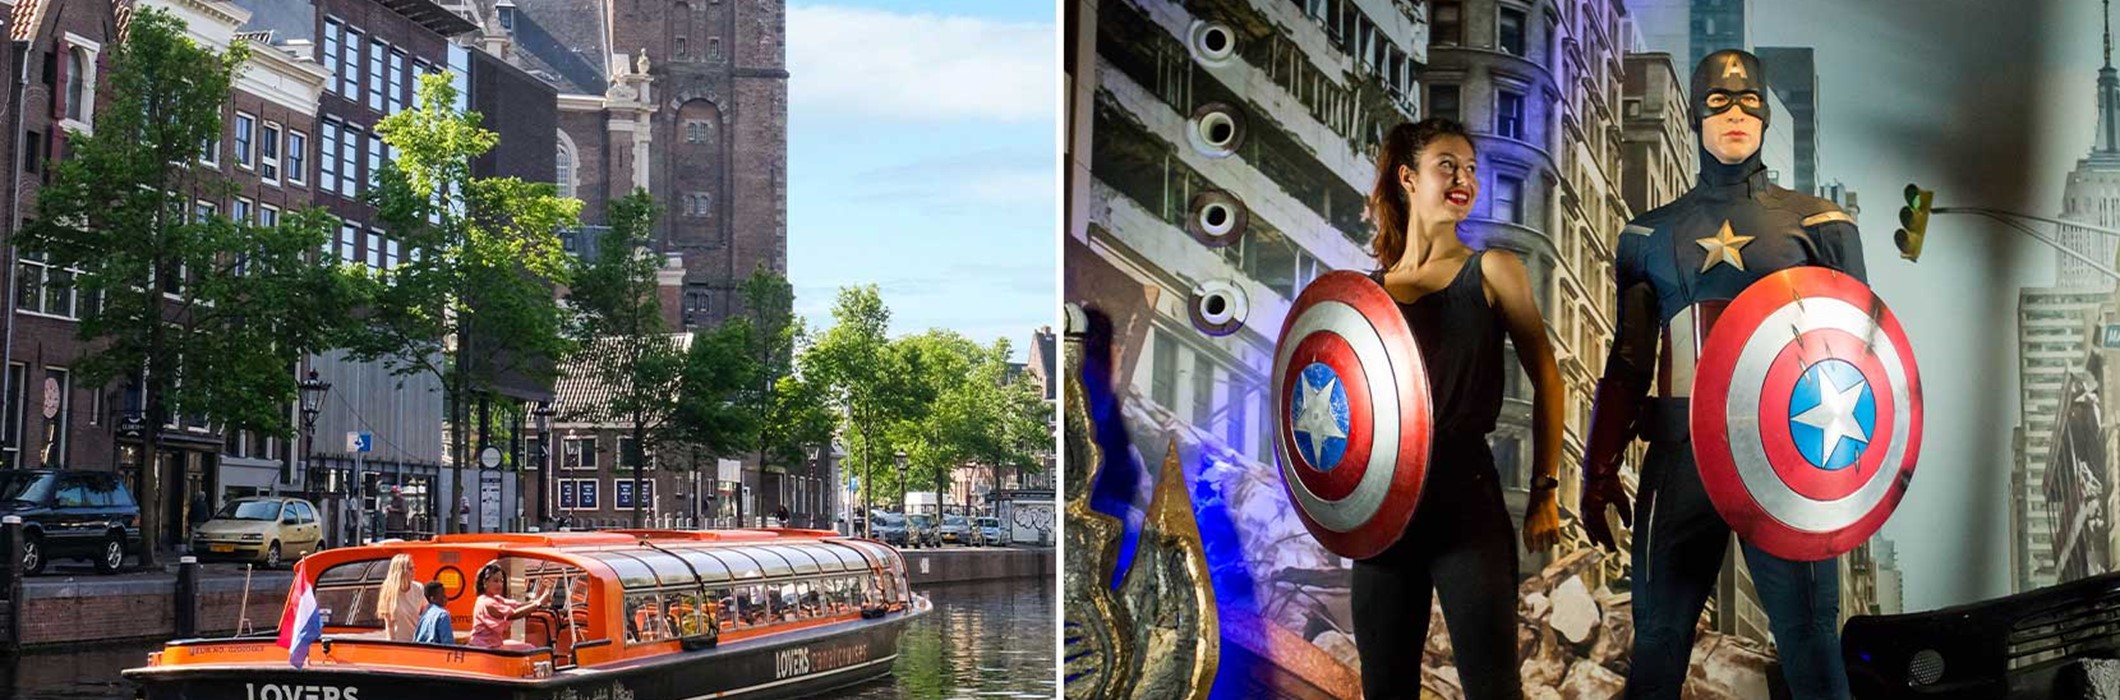 Madame Tussauds + Croisière sur les canaux d'Amsterdam